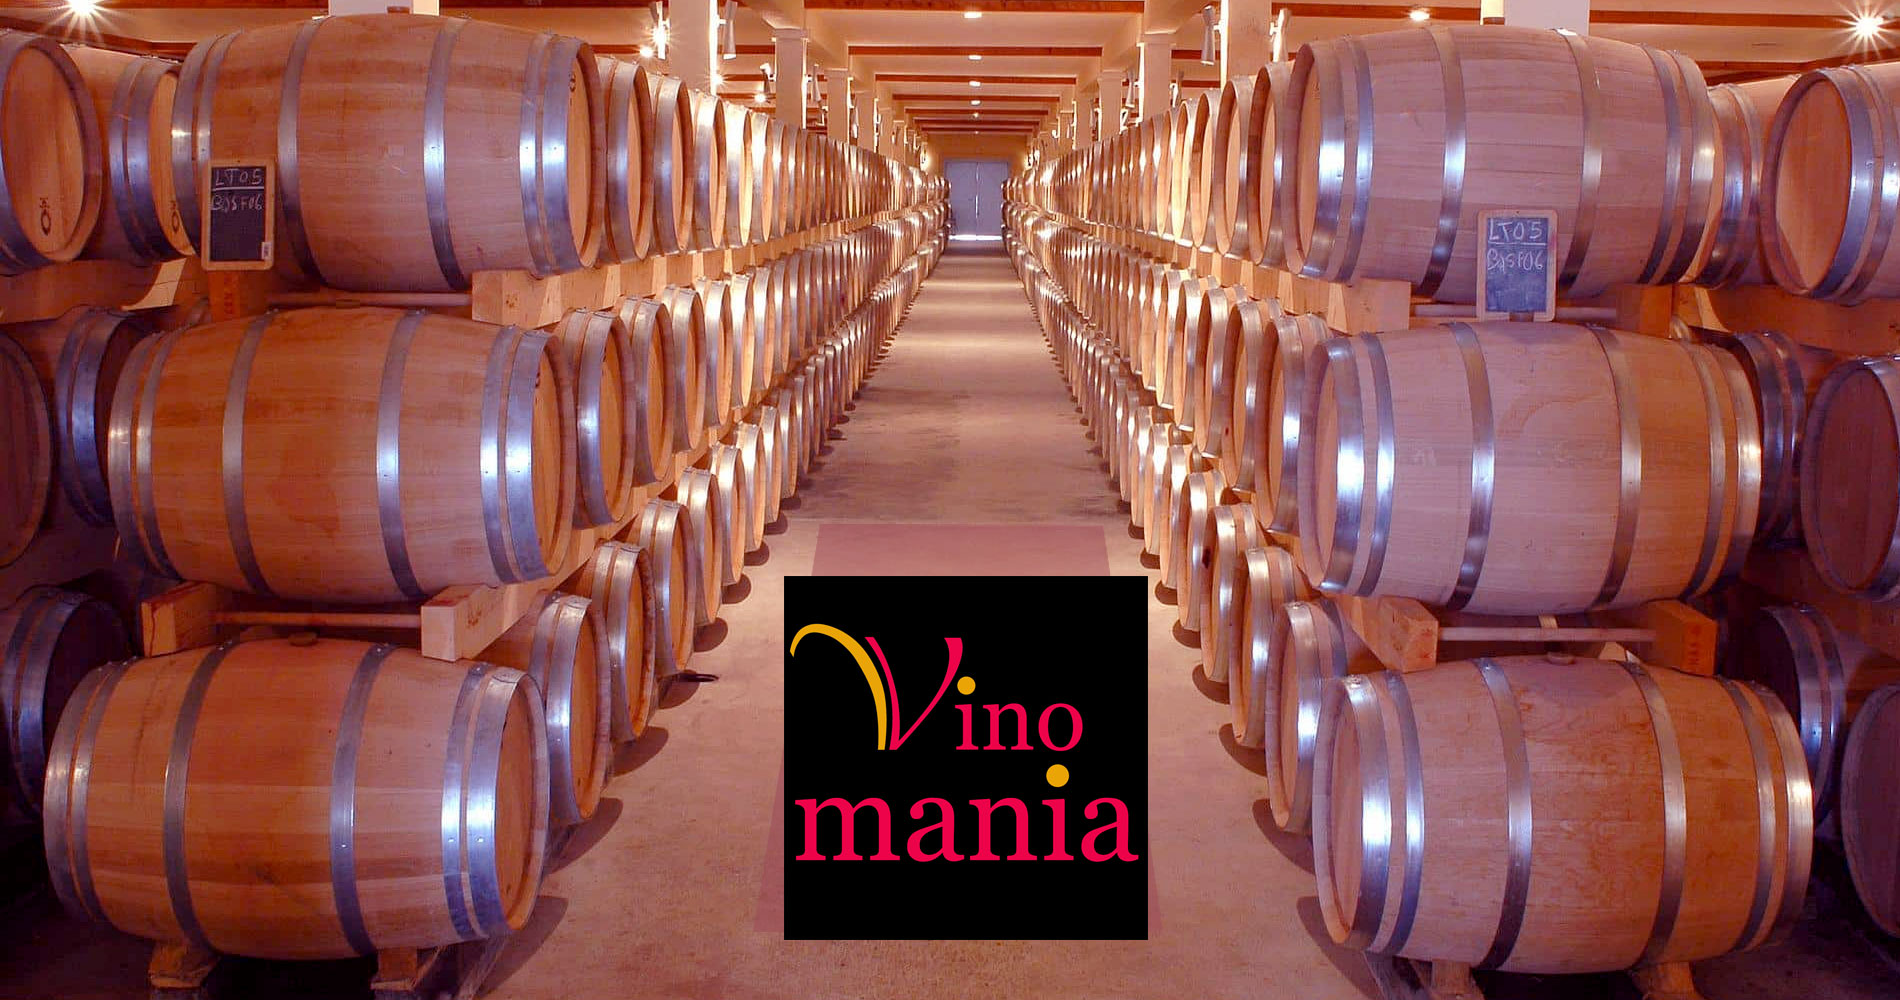 les magasins de vins et spiritueux Vinomania